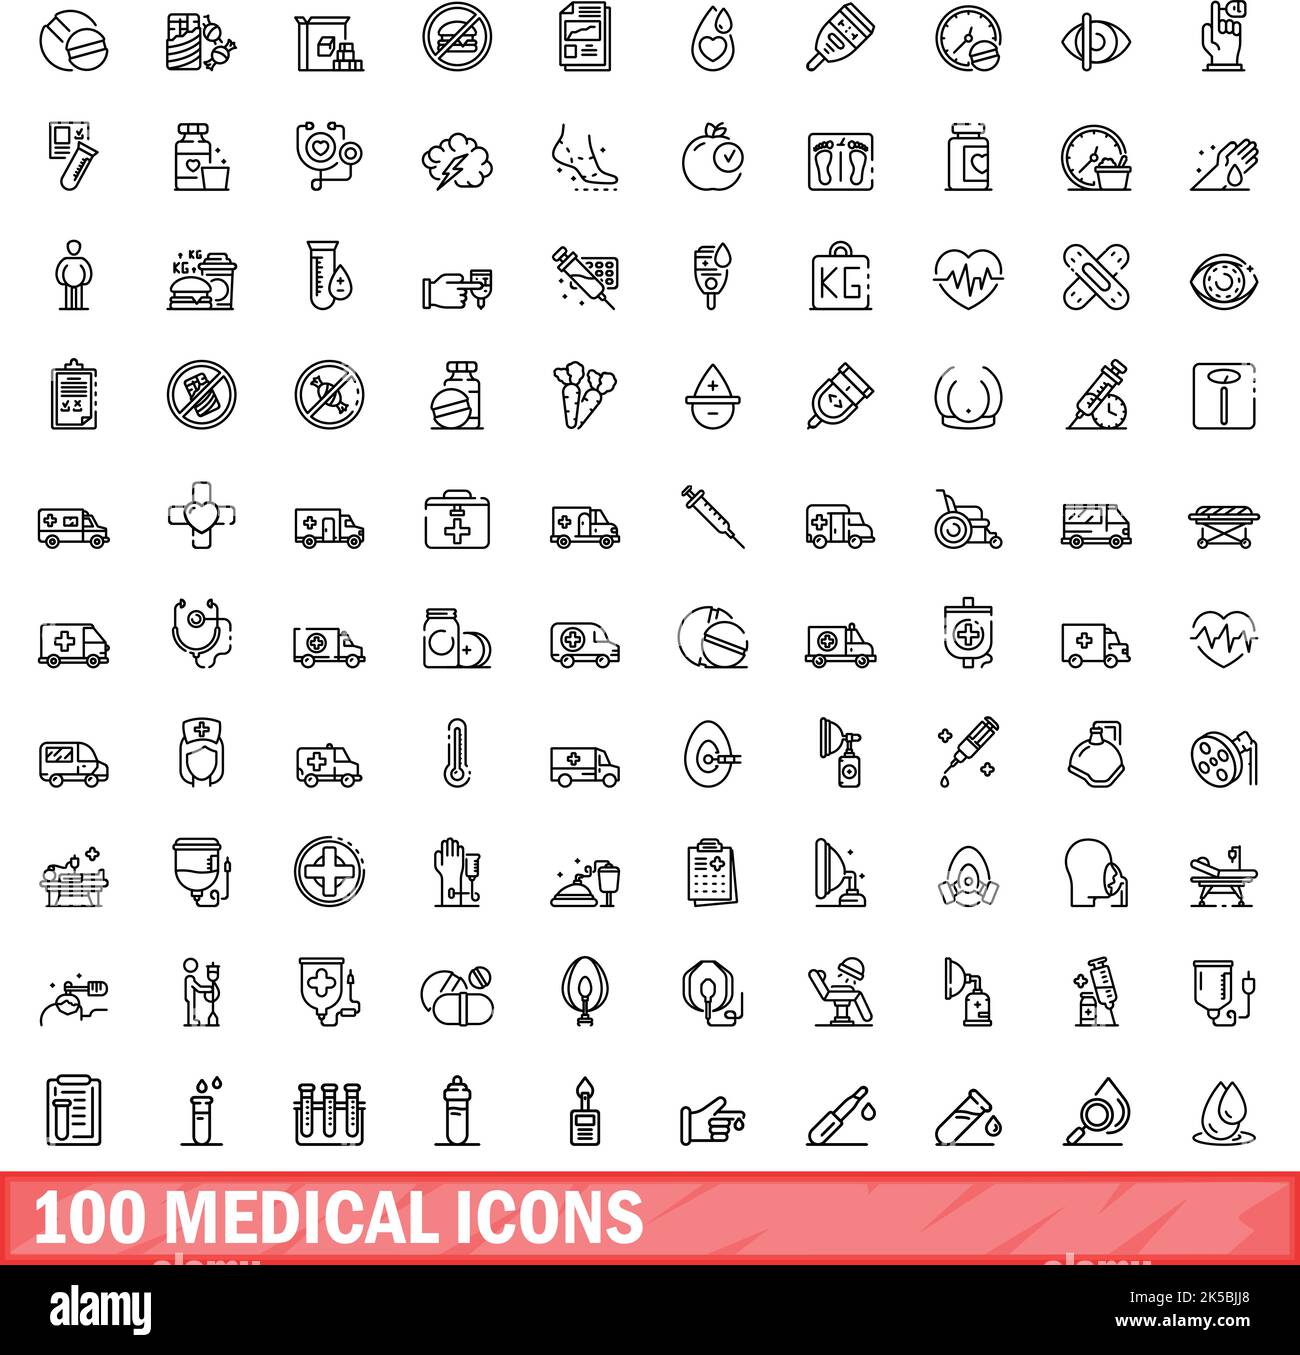 ensemble de 100 icônes médicales. Illustration de 100 icônes médicales ensemble de vecteurs isolé sur fond blanc Illustration de Vecteur